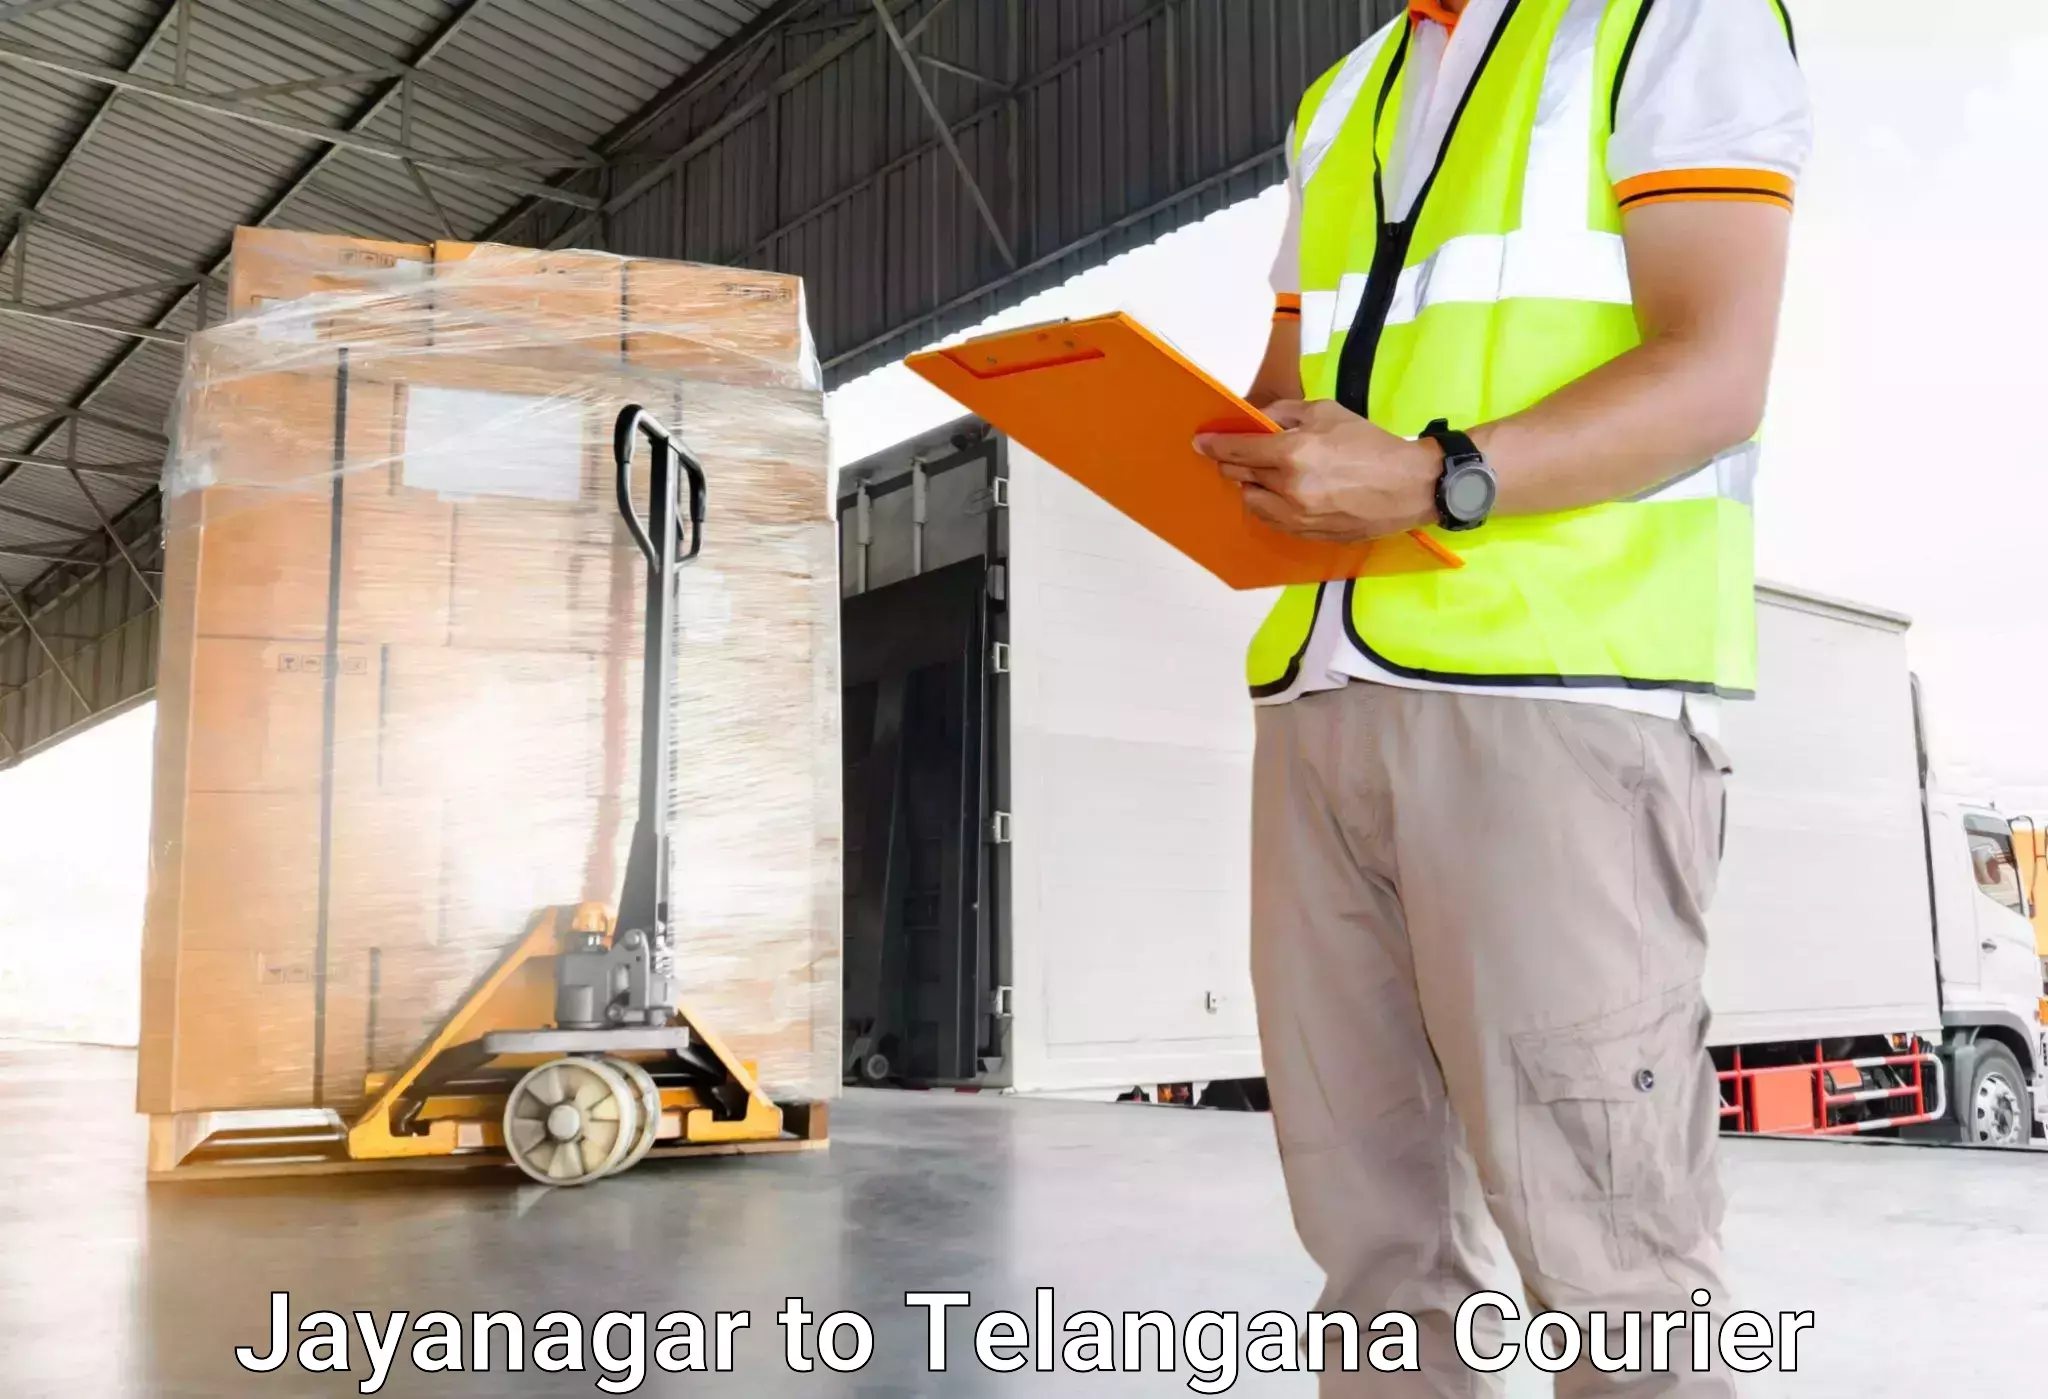 Urgent luggage shipment in Jayanagar to Achampet